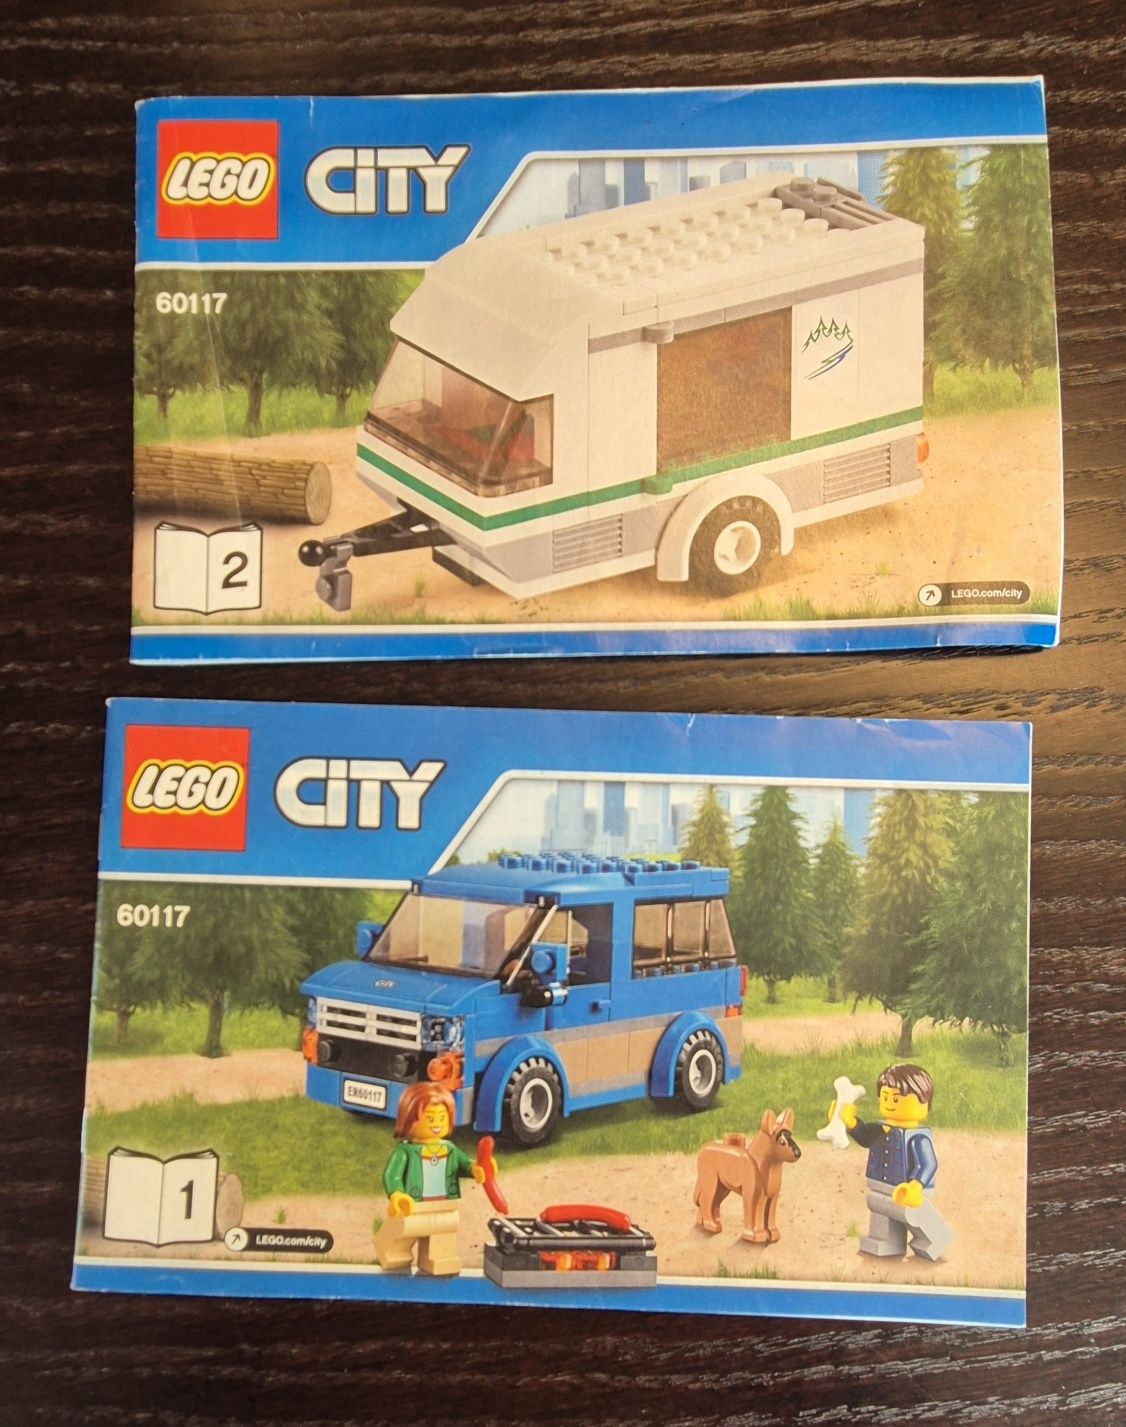 Lego City 60117 van z przyczepą z instrukcja